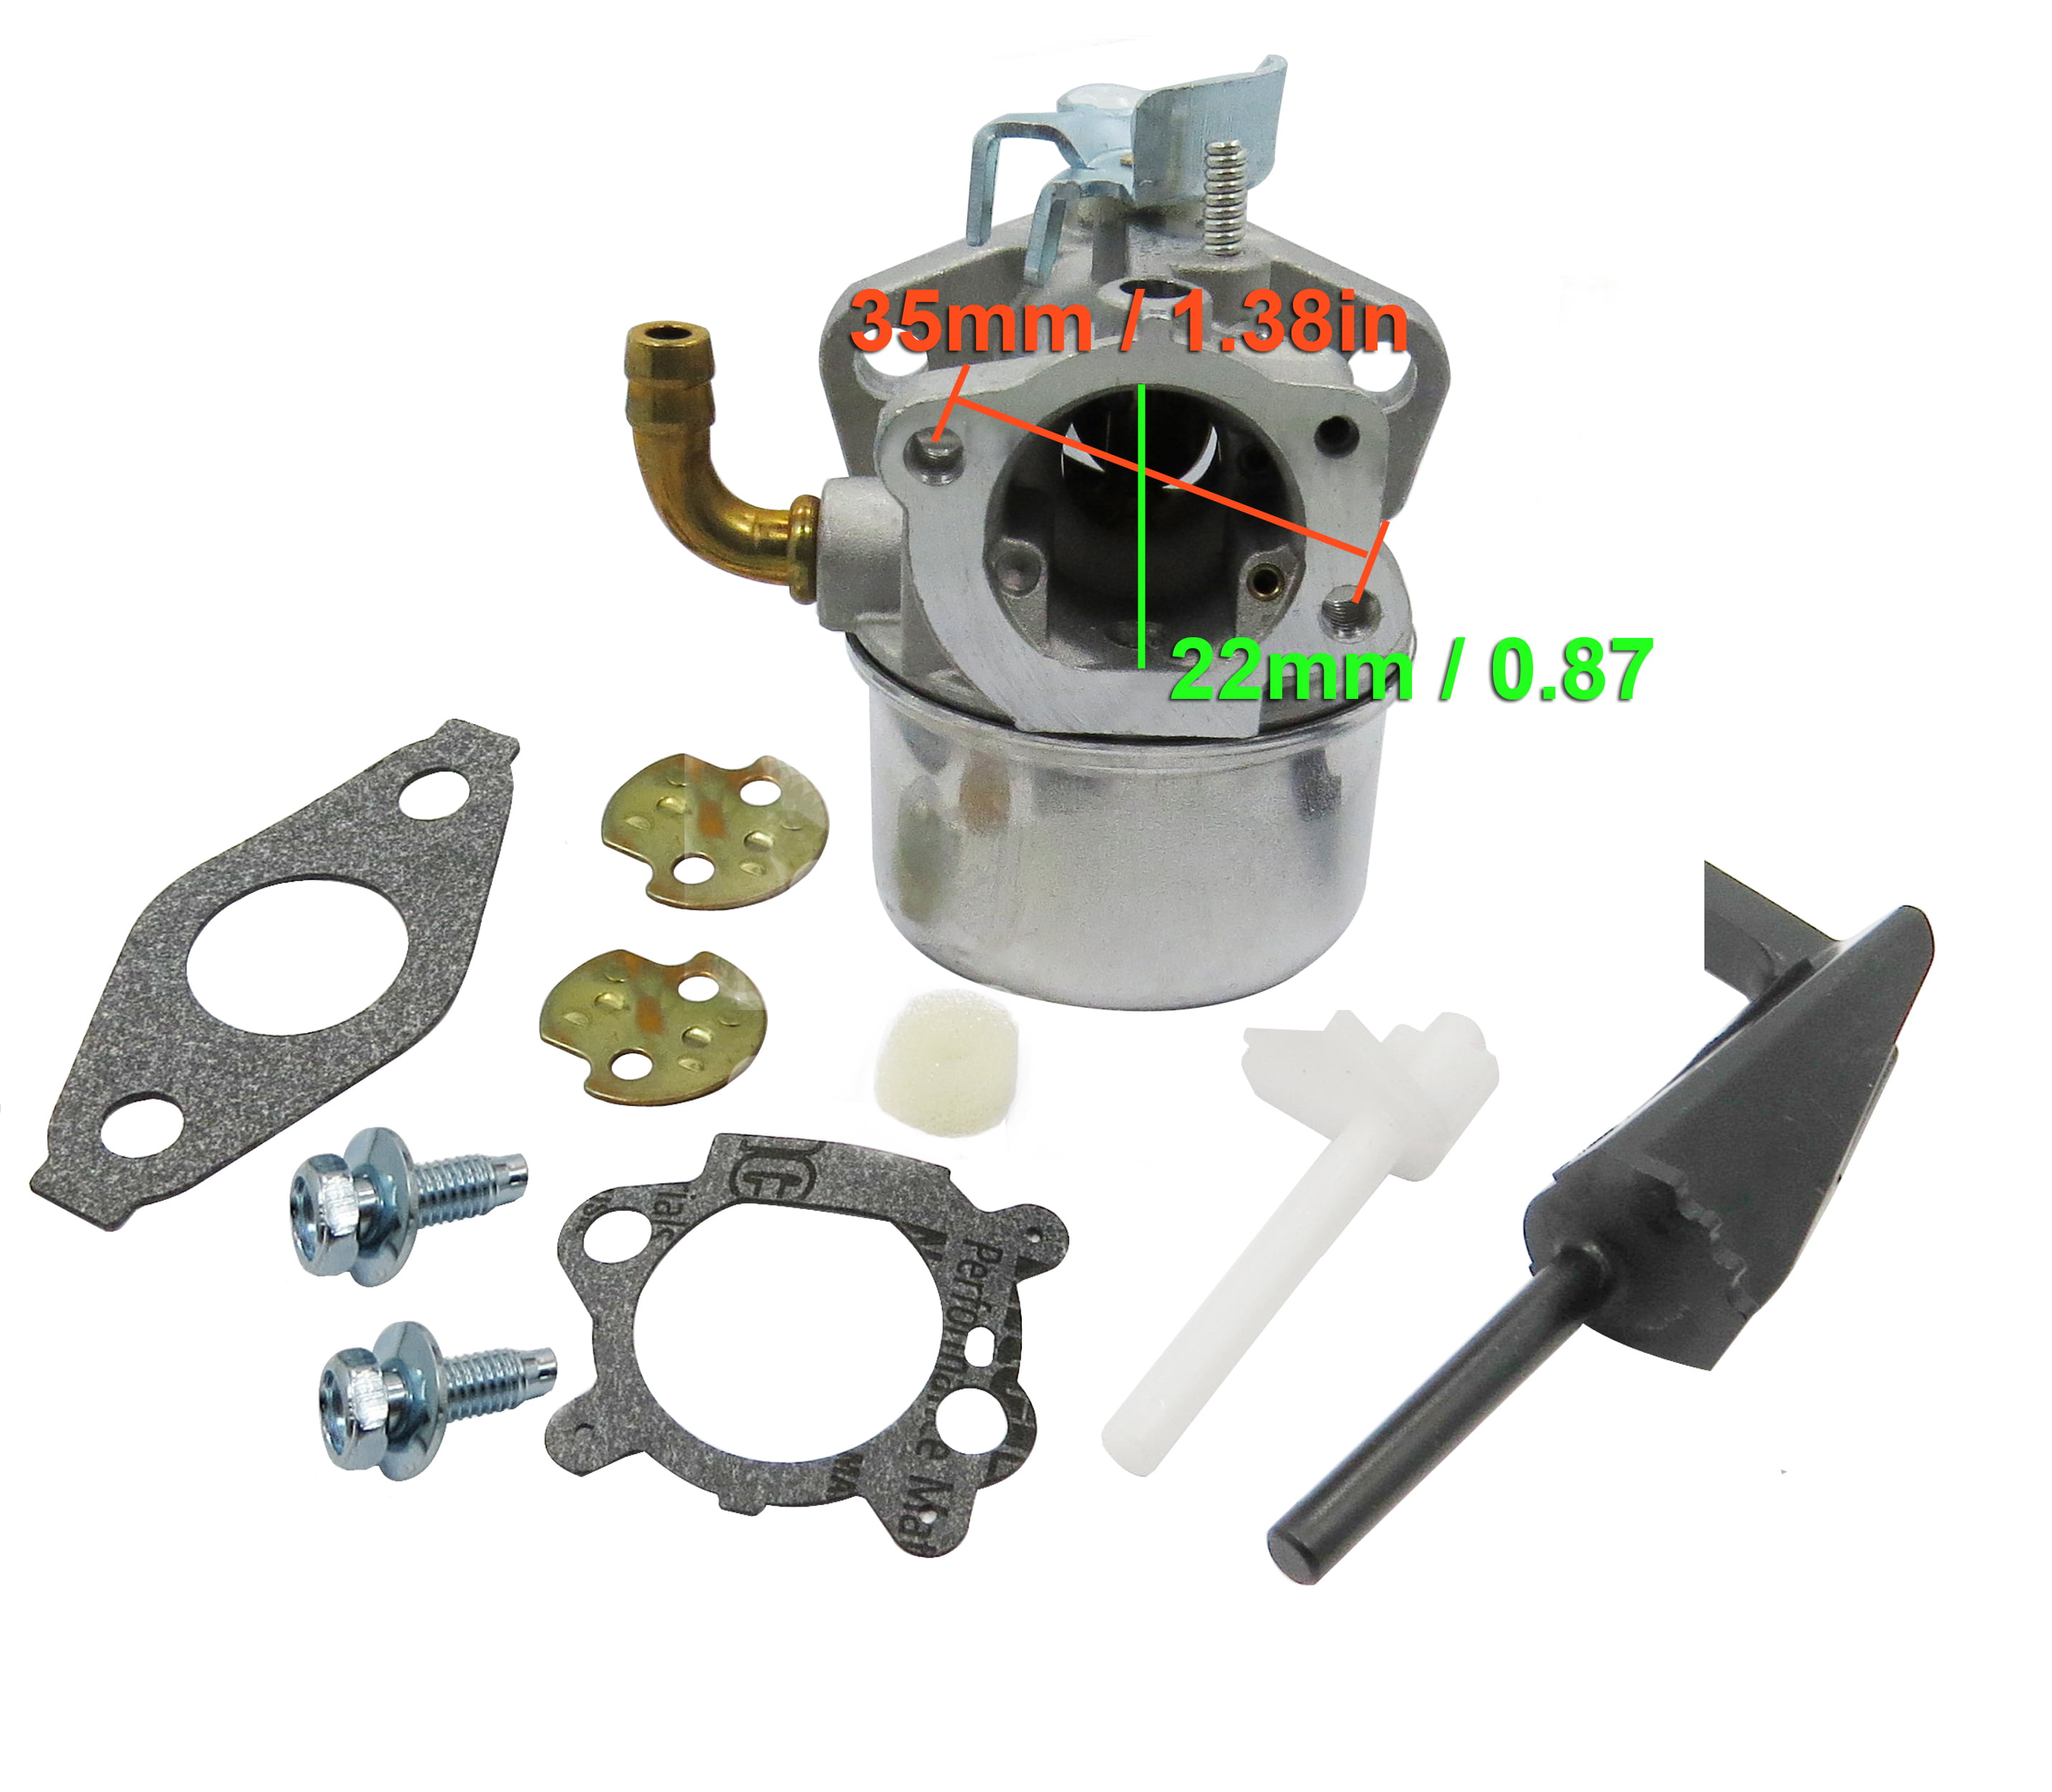 Carburetor for Briggs & Stratton Intek 190 110432-0179-E1 110432-0198-E1 110432 